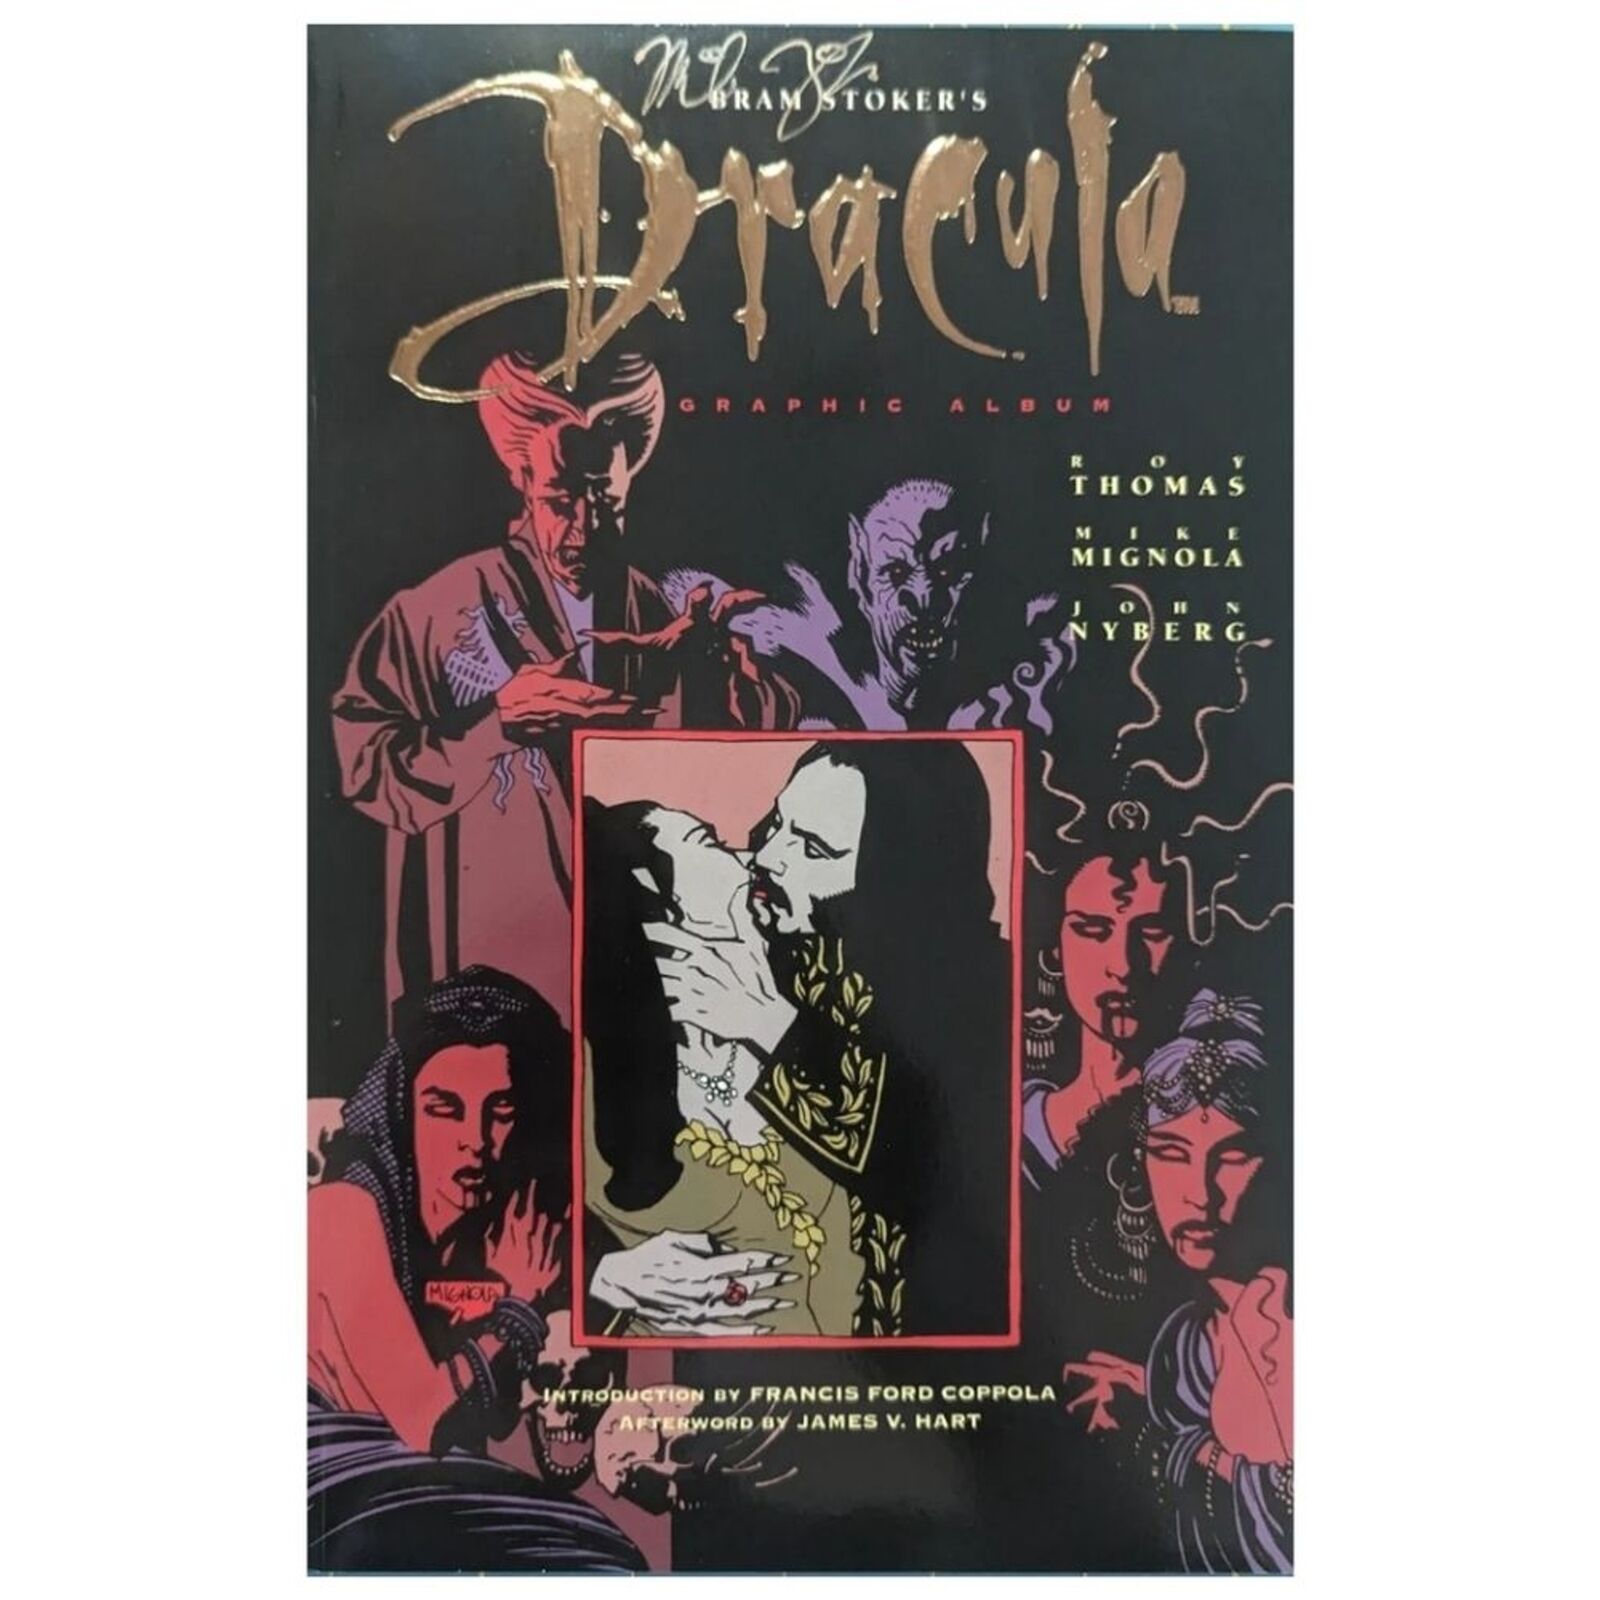 BRAM STOKER'S DRACULA graphic novel